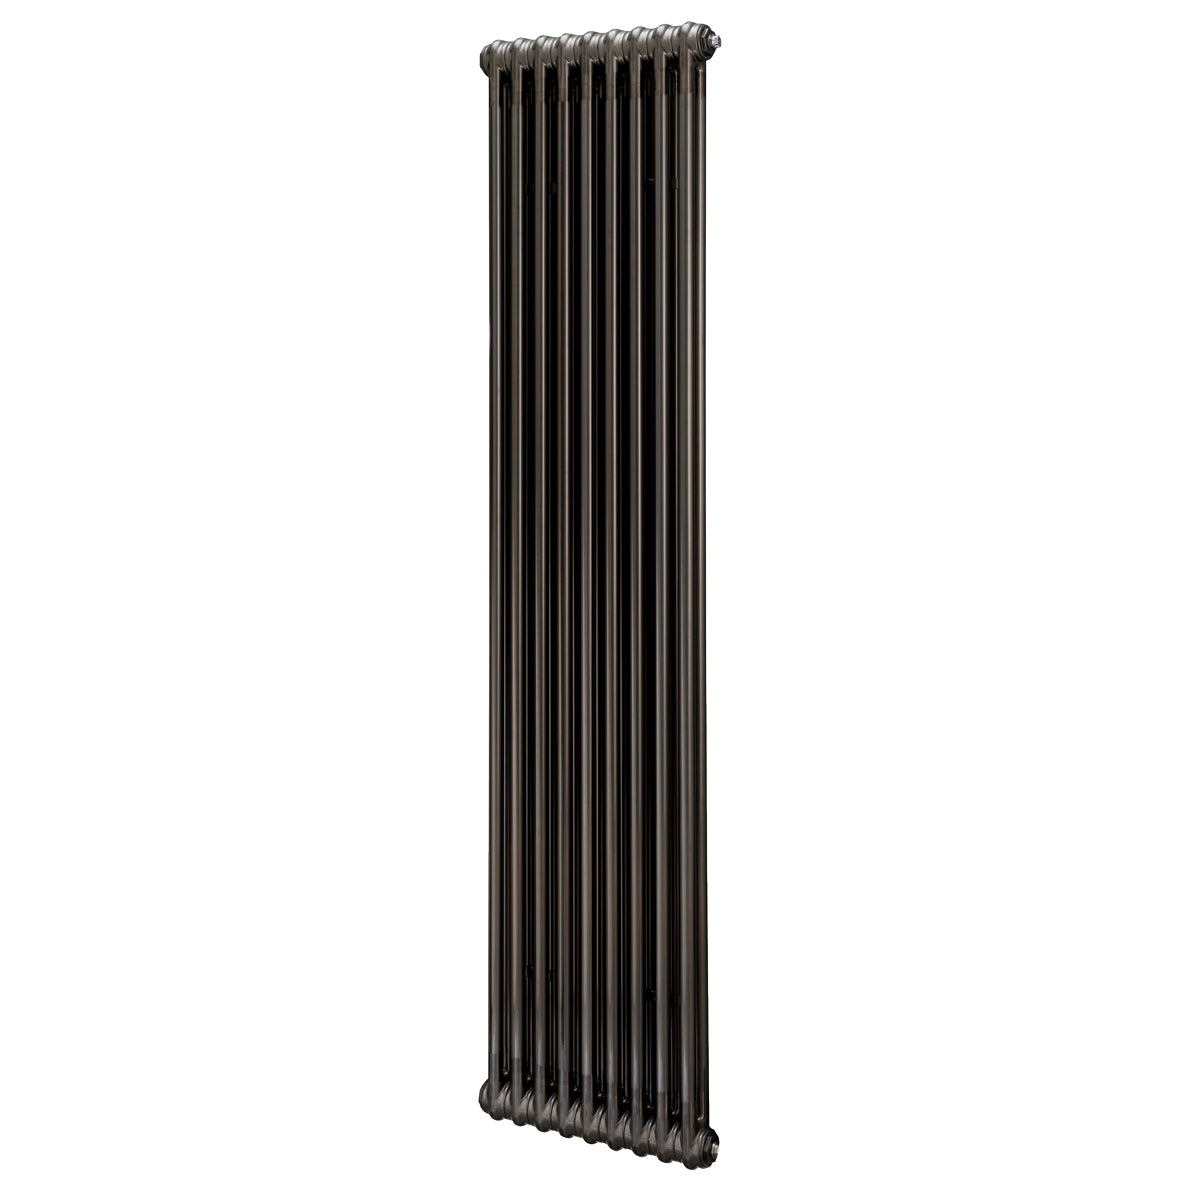 2 Column radiator